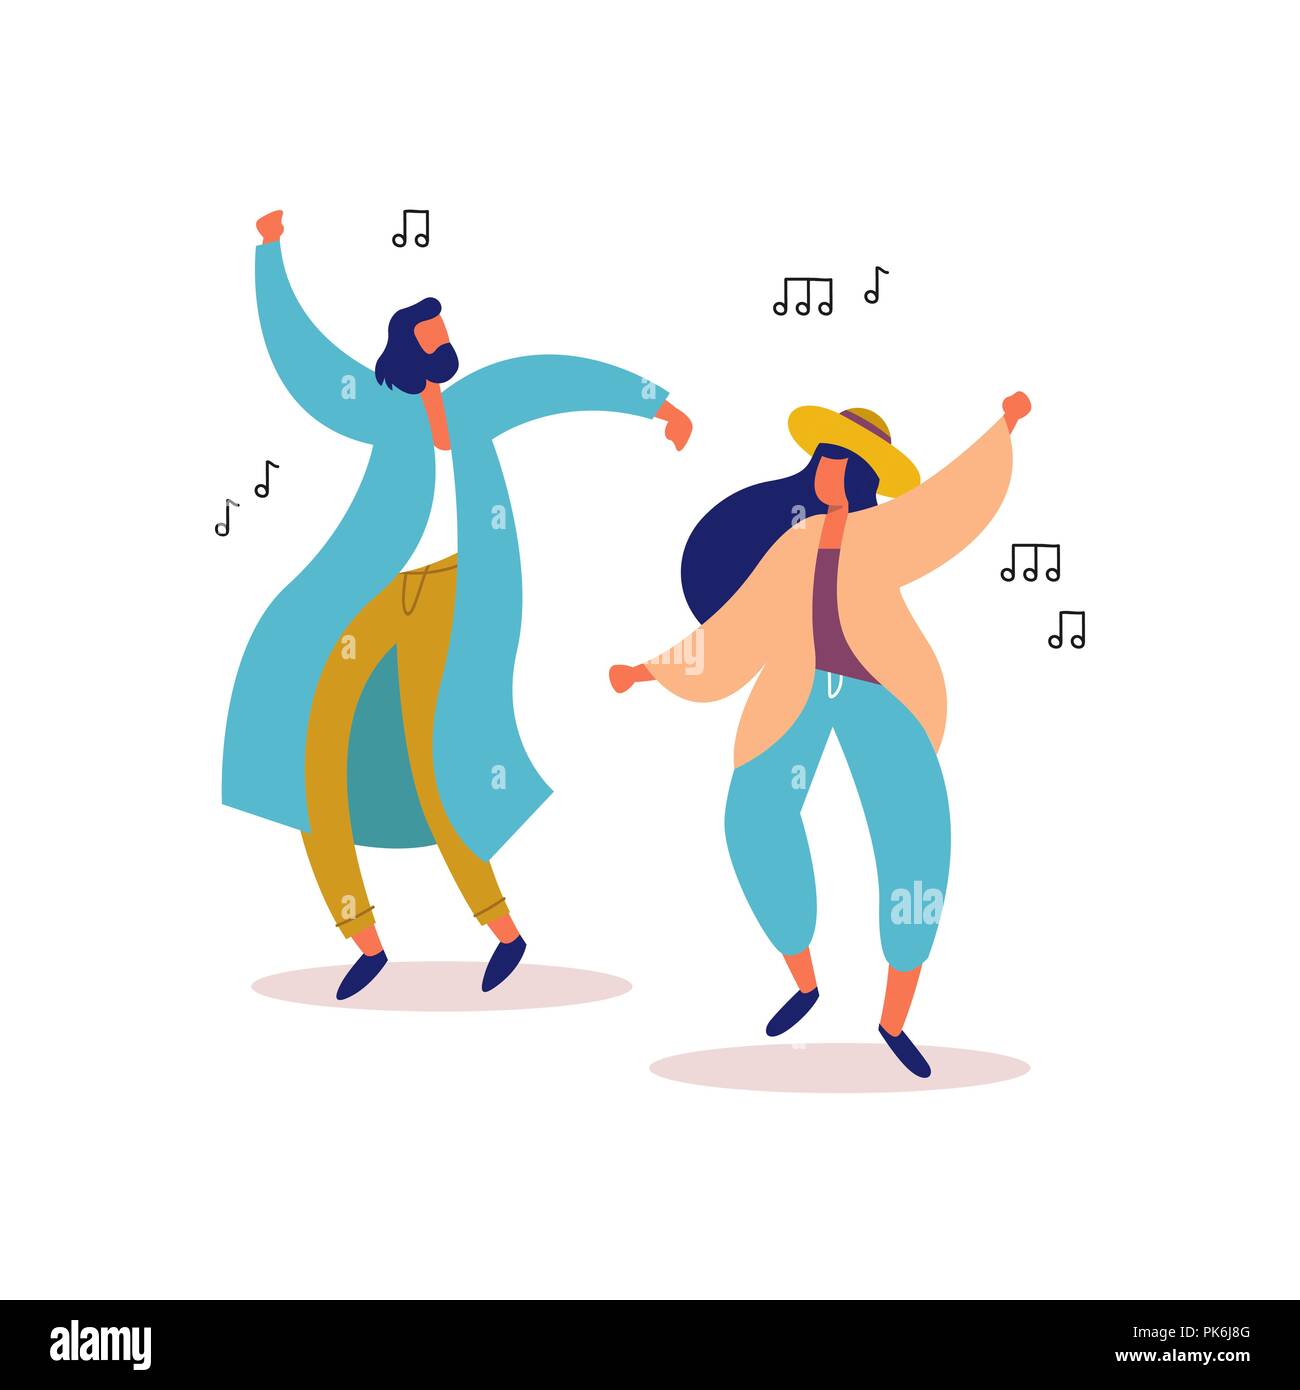 Jeune homme et femme amis danser ensemble pour faire la fête de la musique sur fond isolé. Les gens à l'élégant événement festival, concert en plein air ou club dance fl Illustration de Vecteur